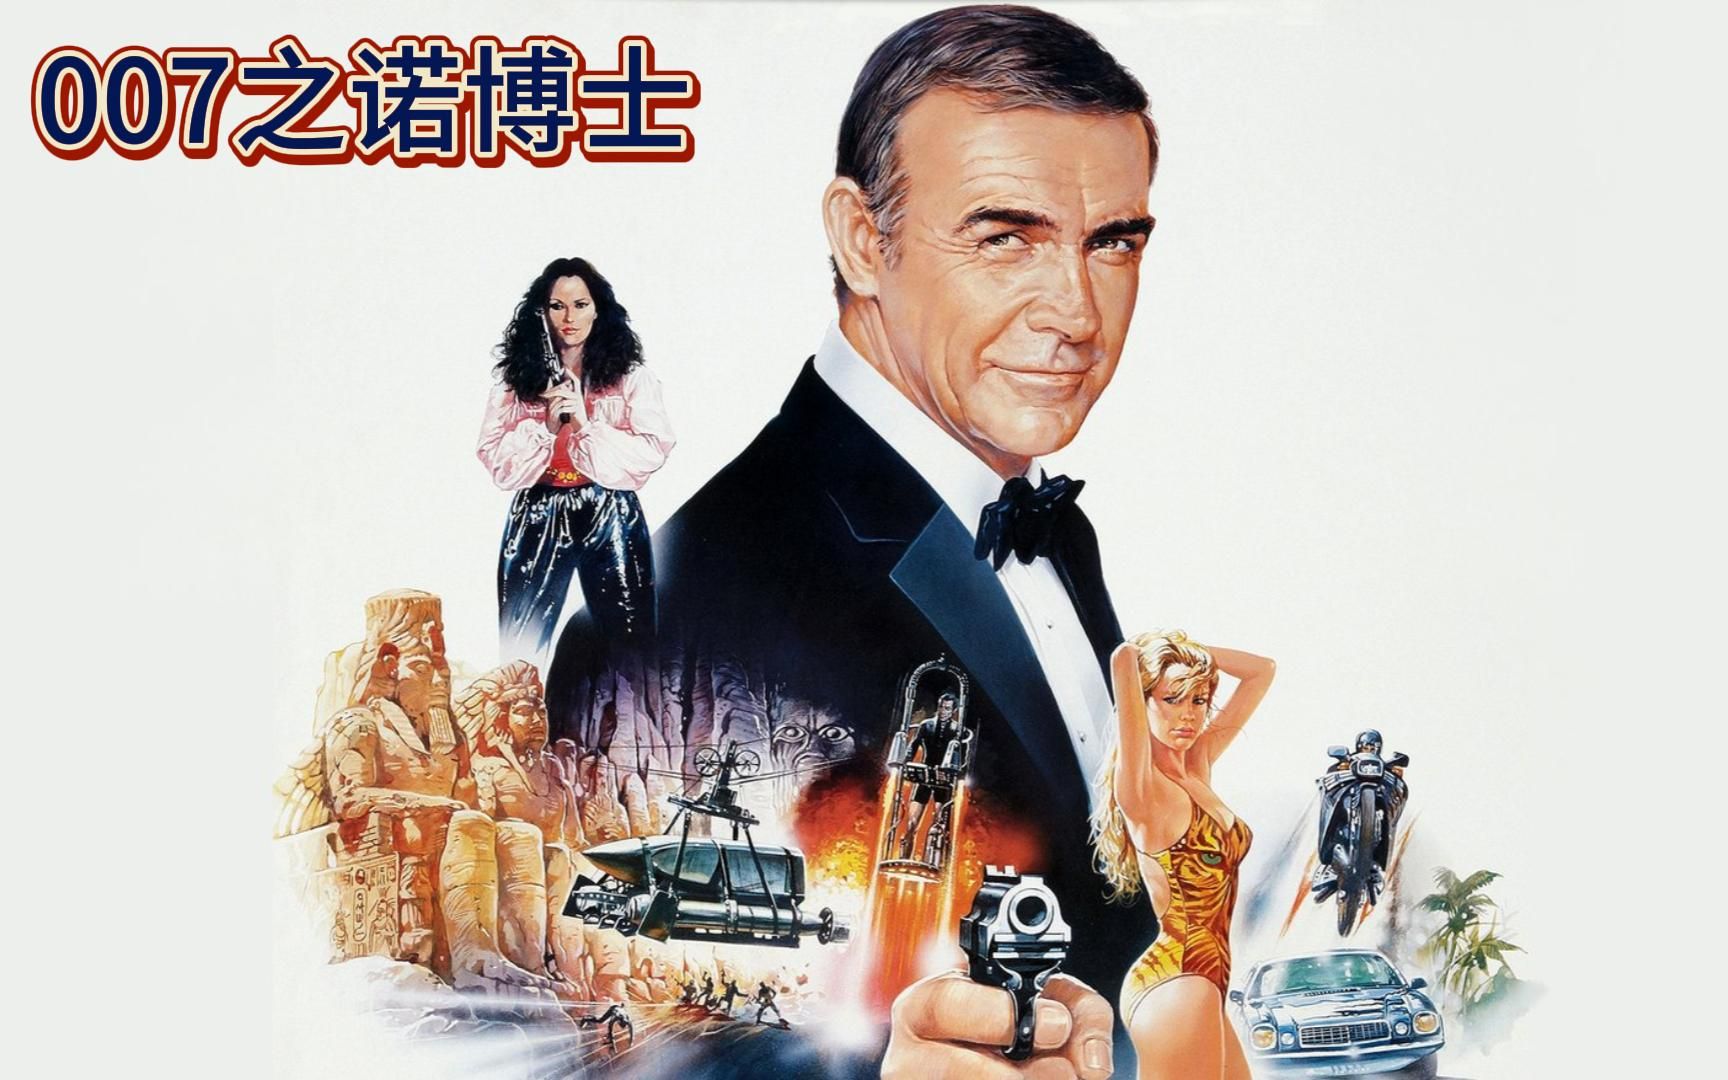 【冰子】007系列电影开山之作《诺博士》,史上最强特工首次亮相 !